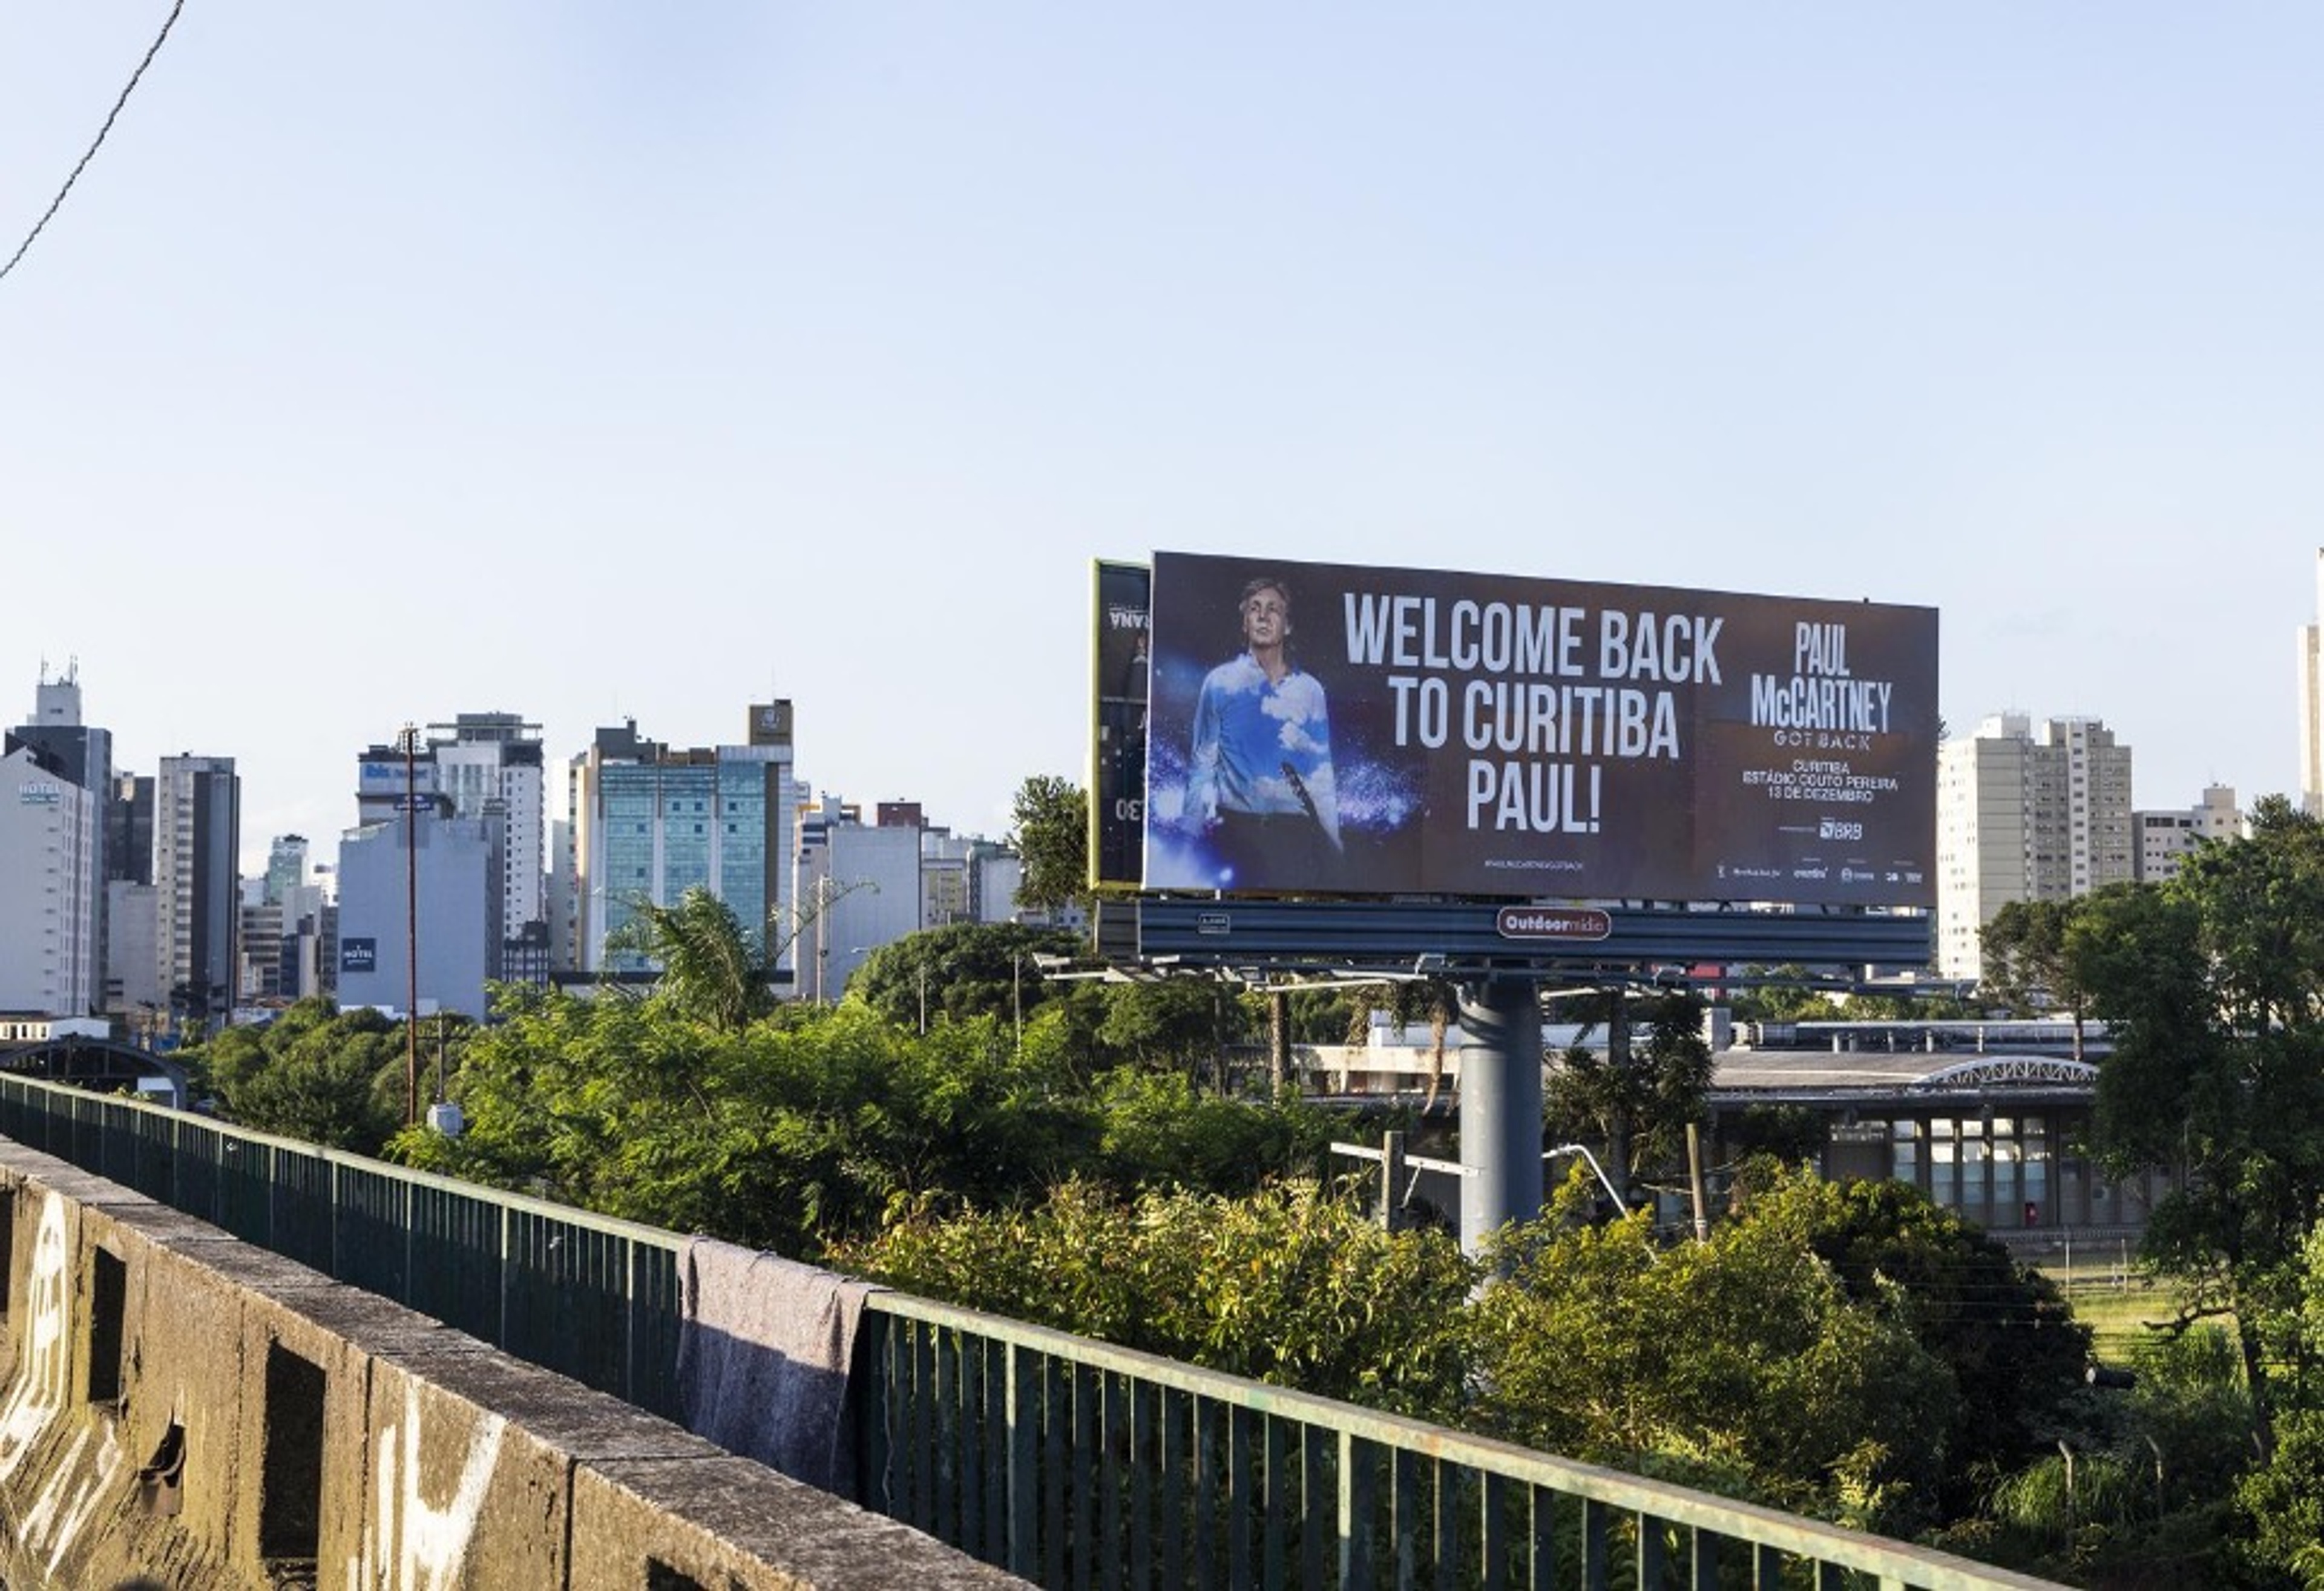 Billboard in Curitiba saying "Welcome back to Curitiba Paul!"